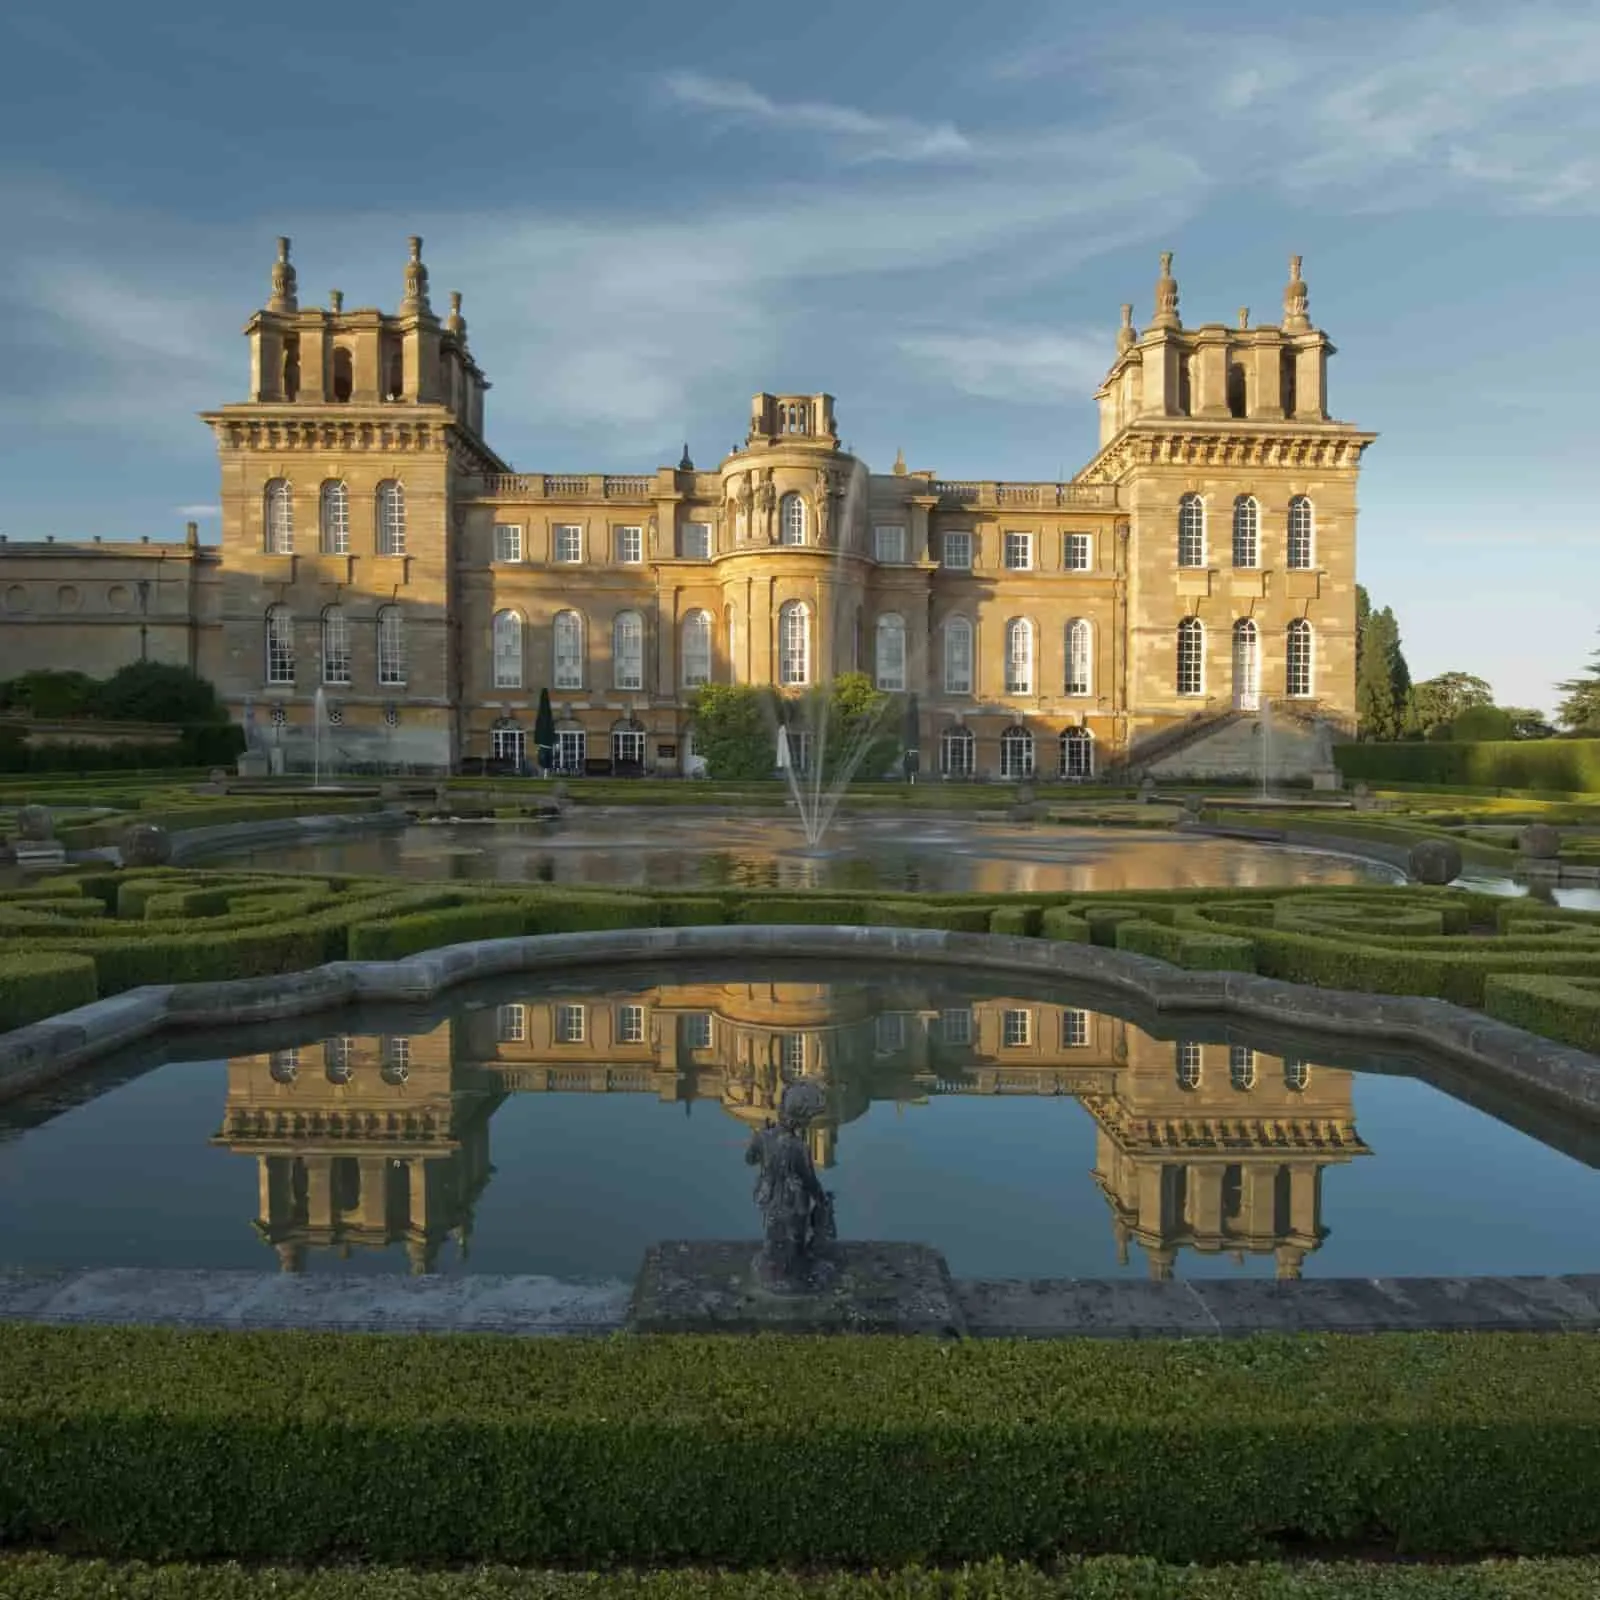 Pałac Blenheim, jedyny nie-królewski pałac w Anglii, na tle błękitnego nieba.